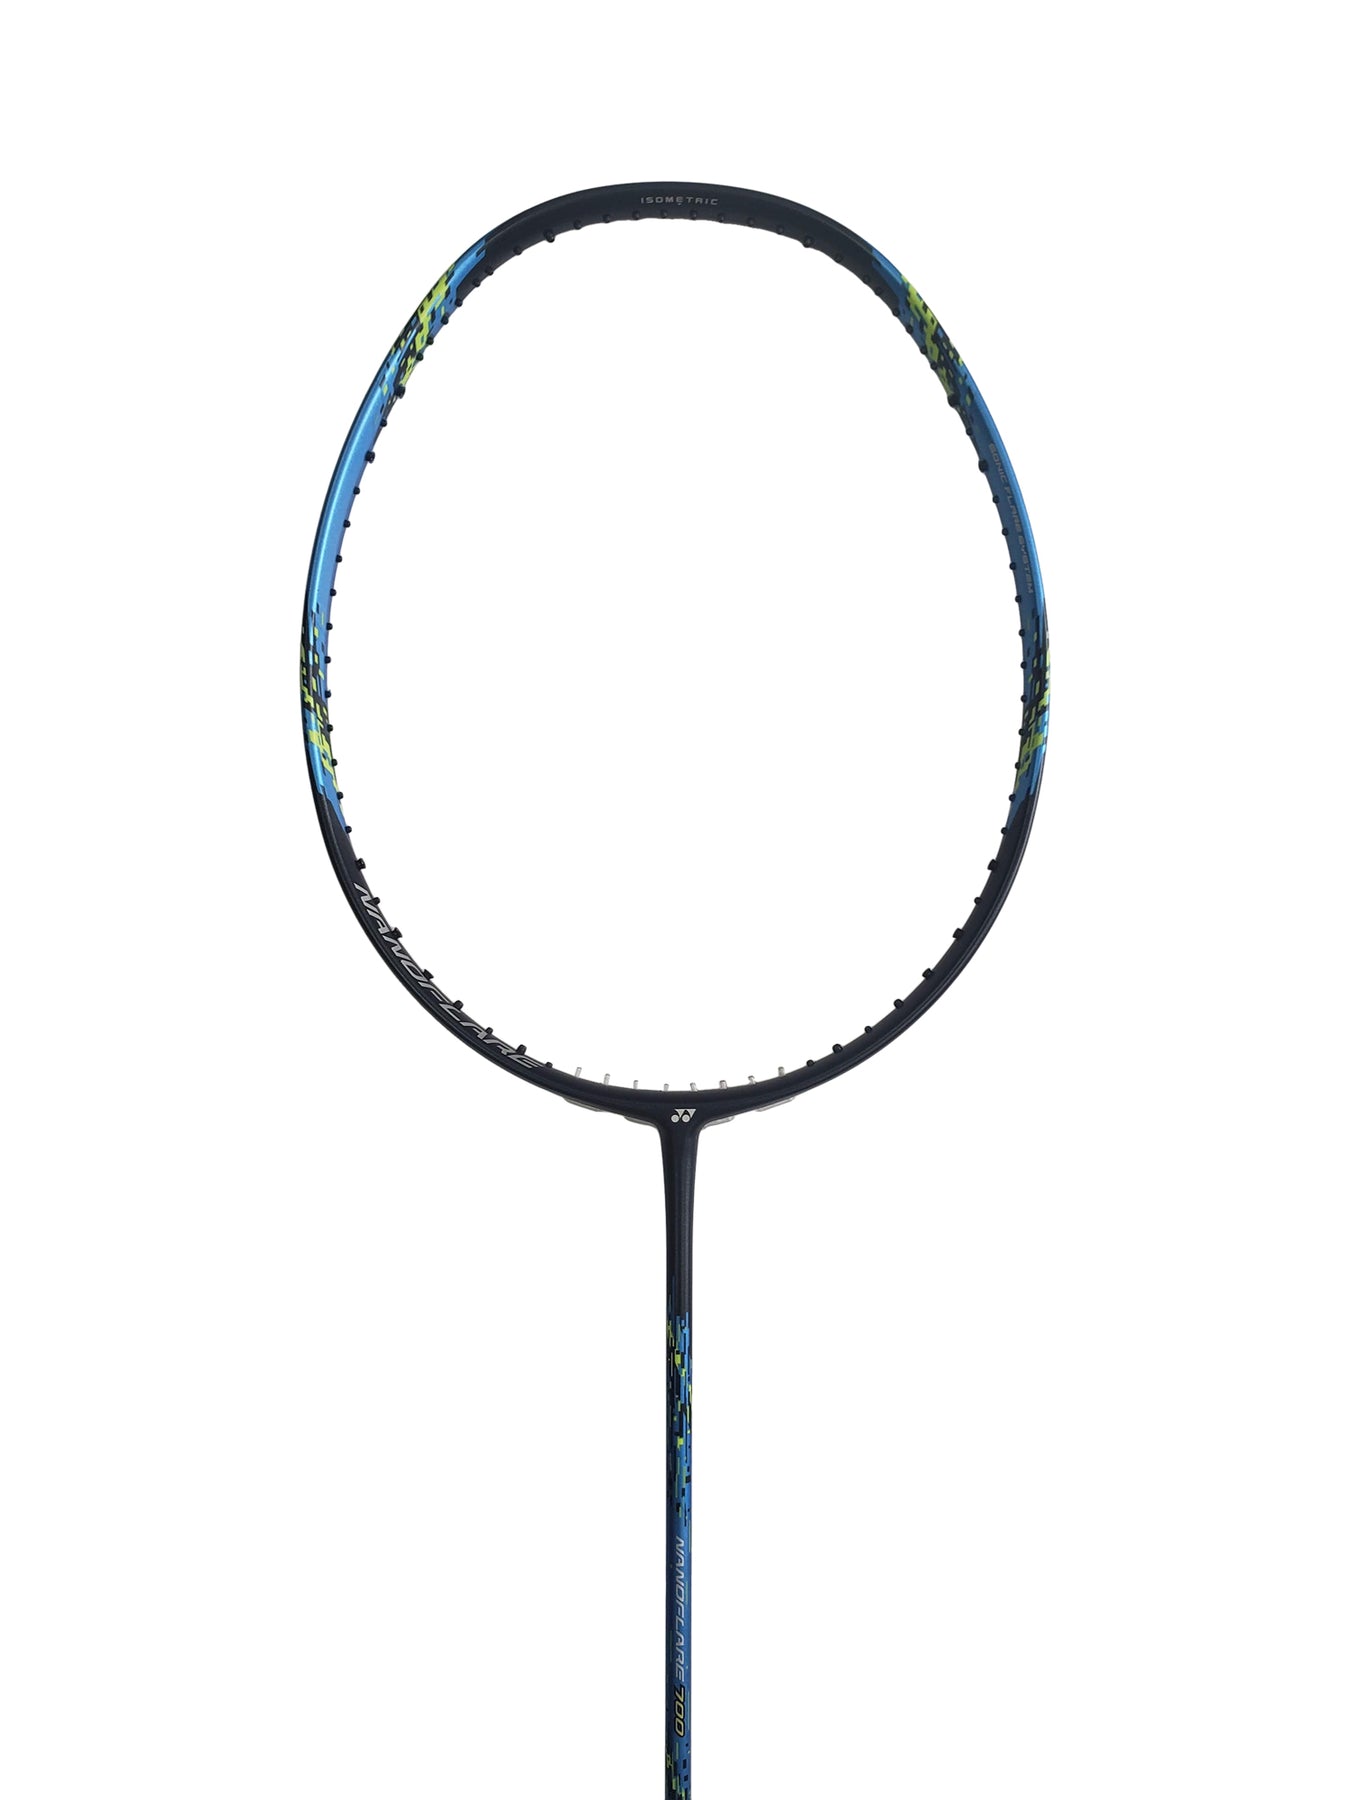 Yonex Nanoflare Badminton Rackets